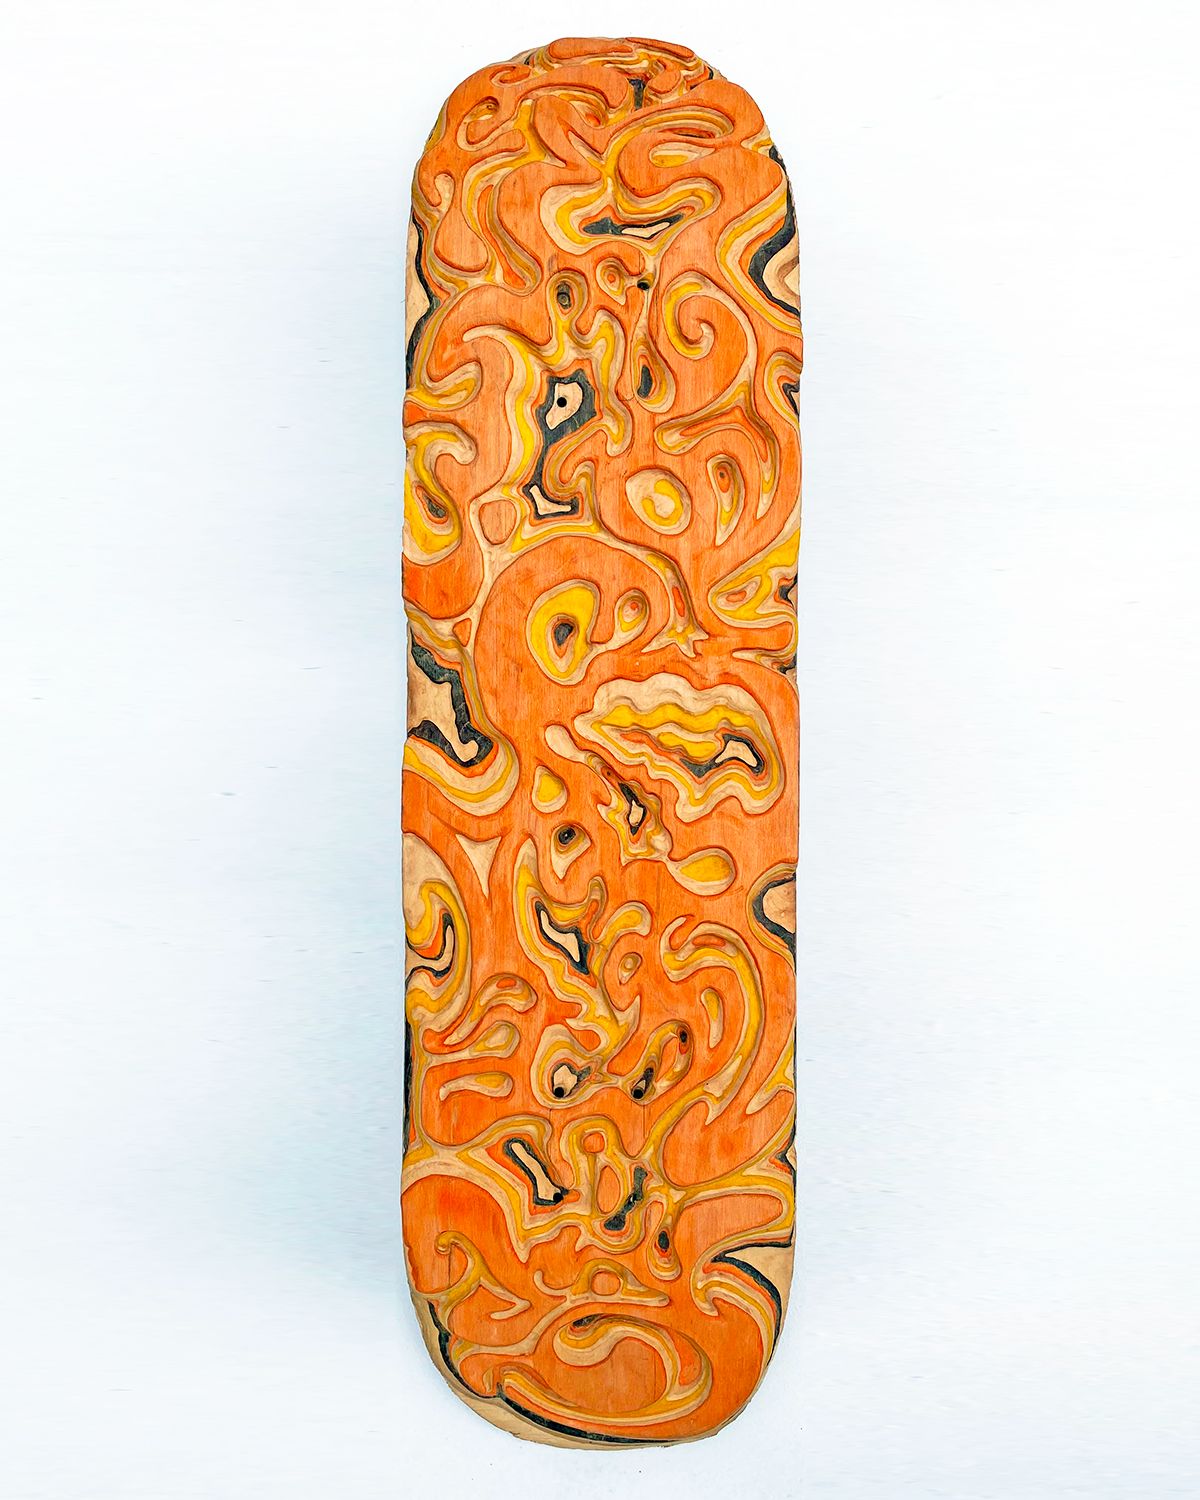 Carving Custom Skateboards By Tom Le Maitre 5